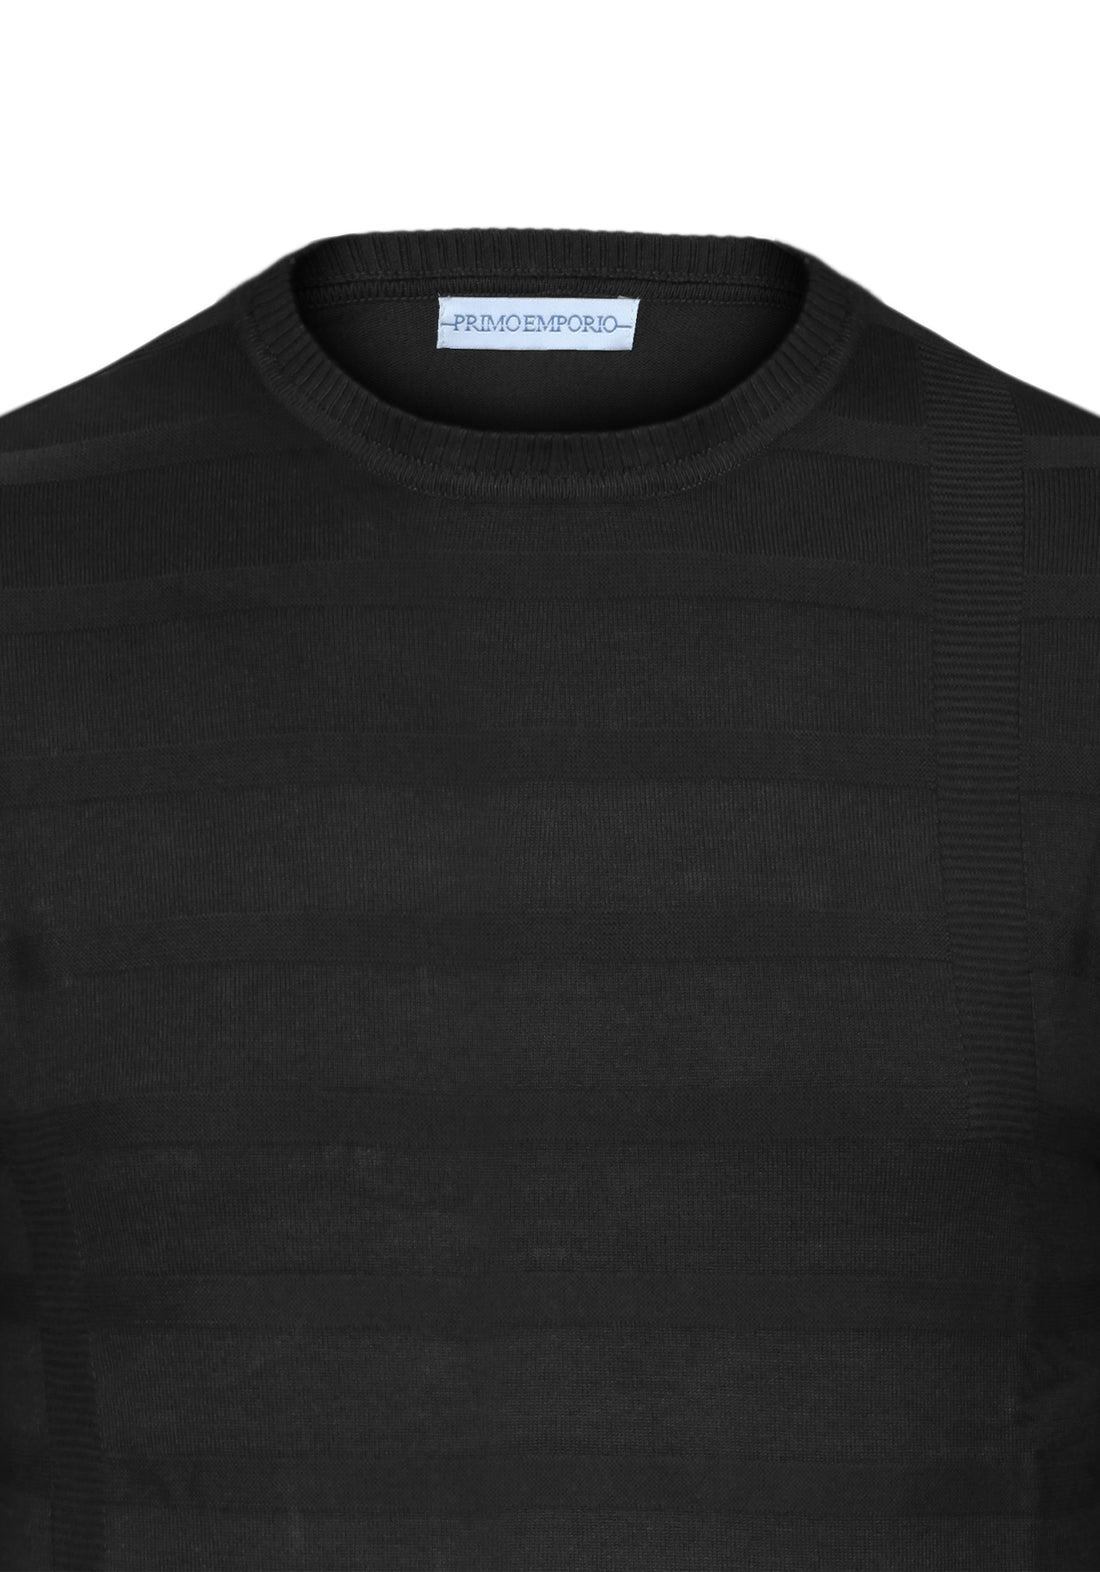 Elastic round neck sweater in Viscose - Black